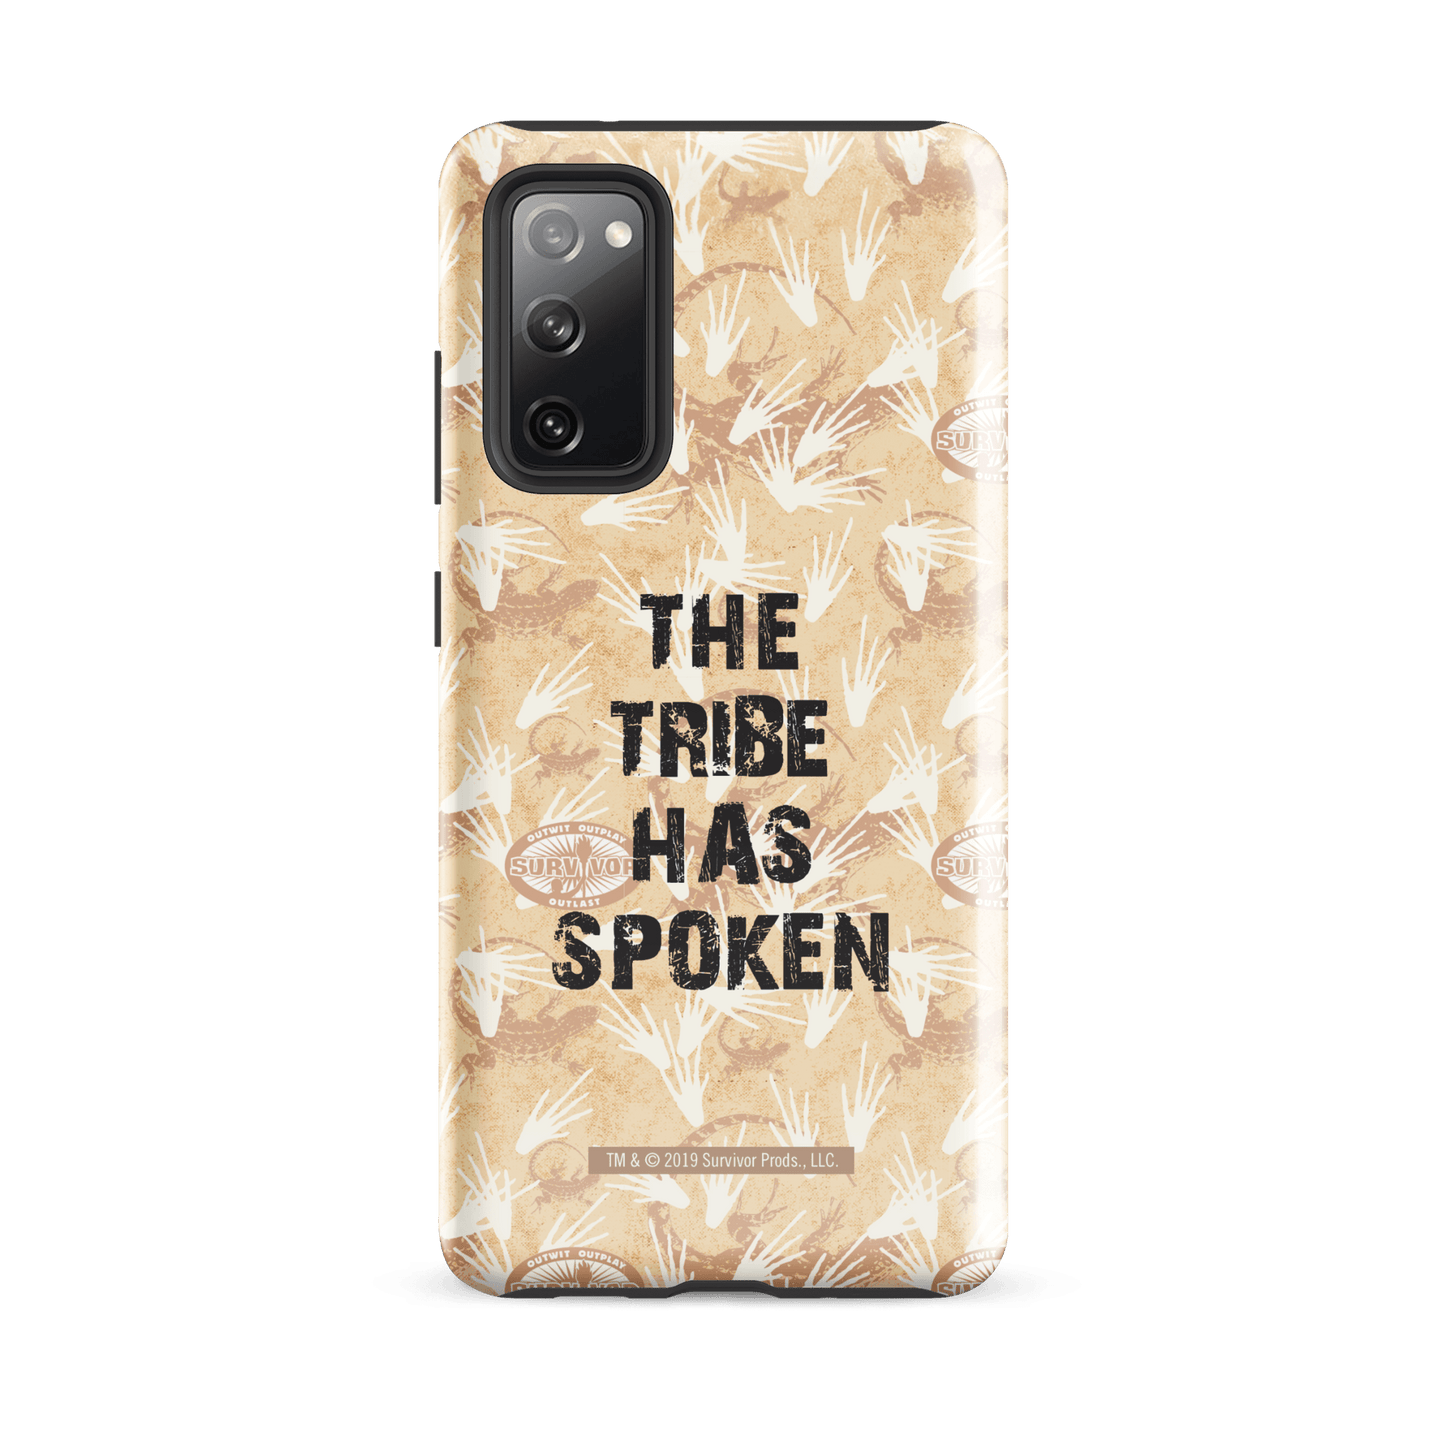 Survivor The Tribe Has Spoken Tough Phone Case - Samsung - Paramount Shop